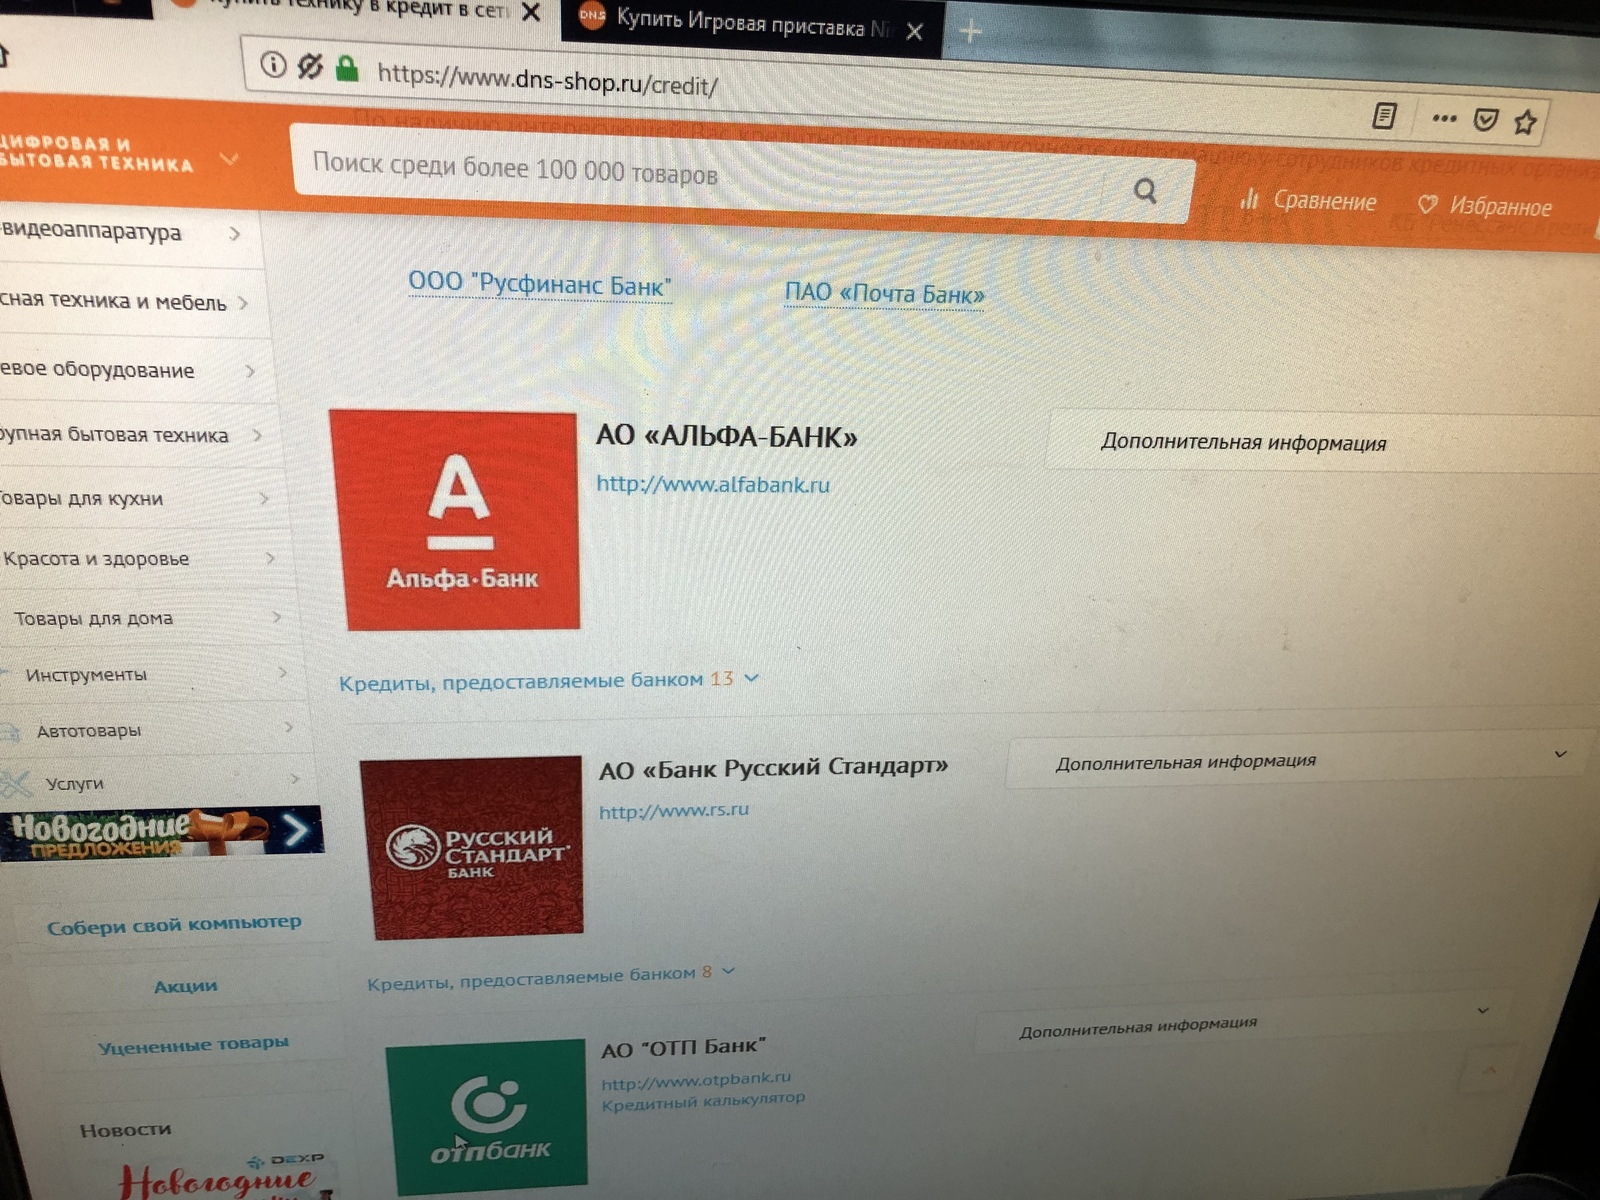 заявка на кредит во все банки онлайн решение саратов